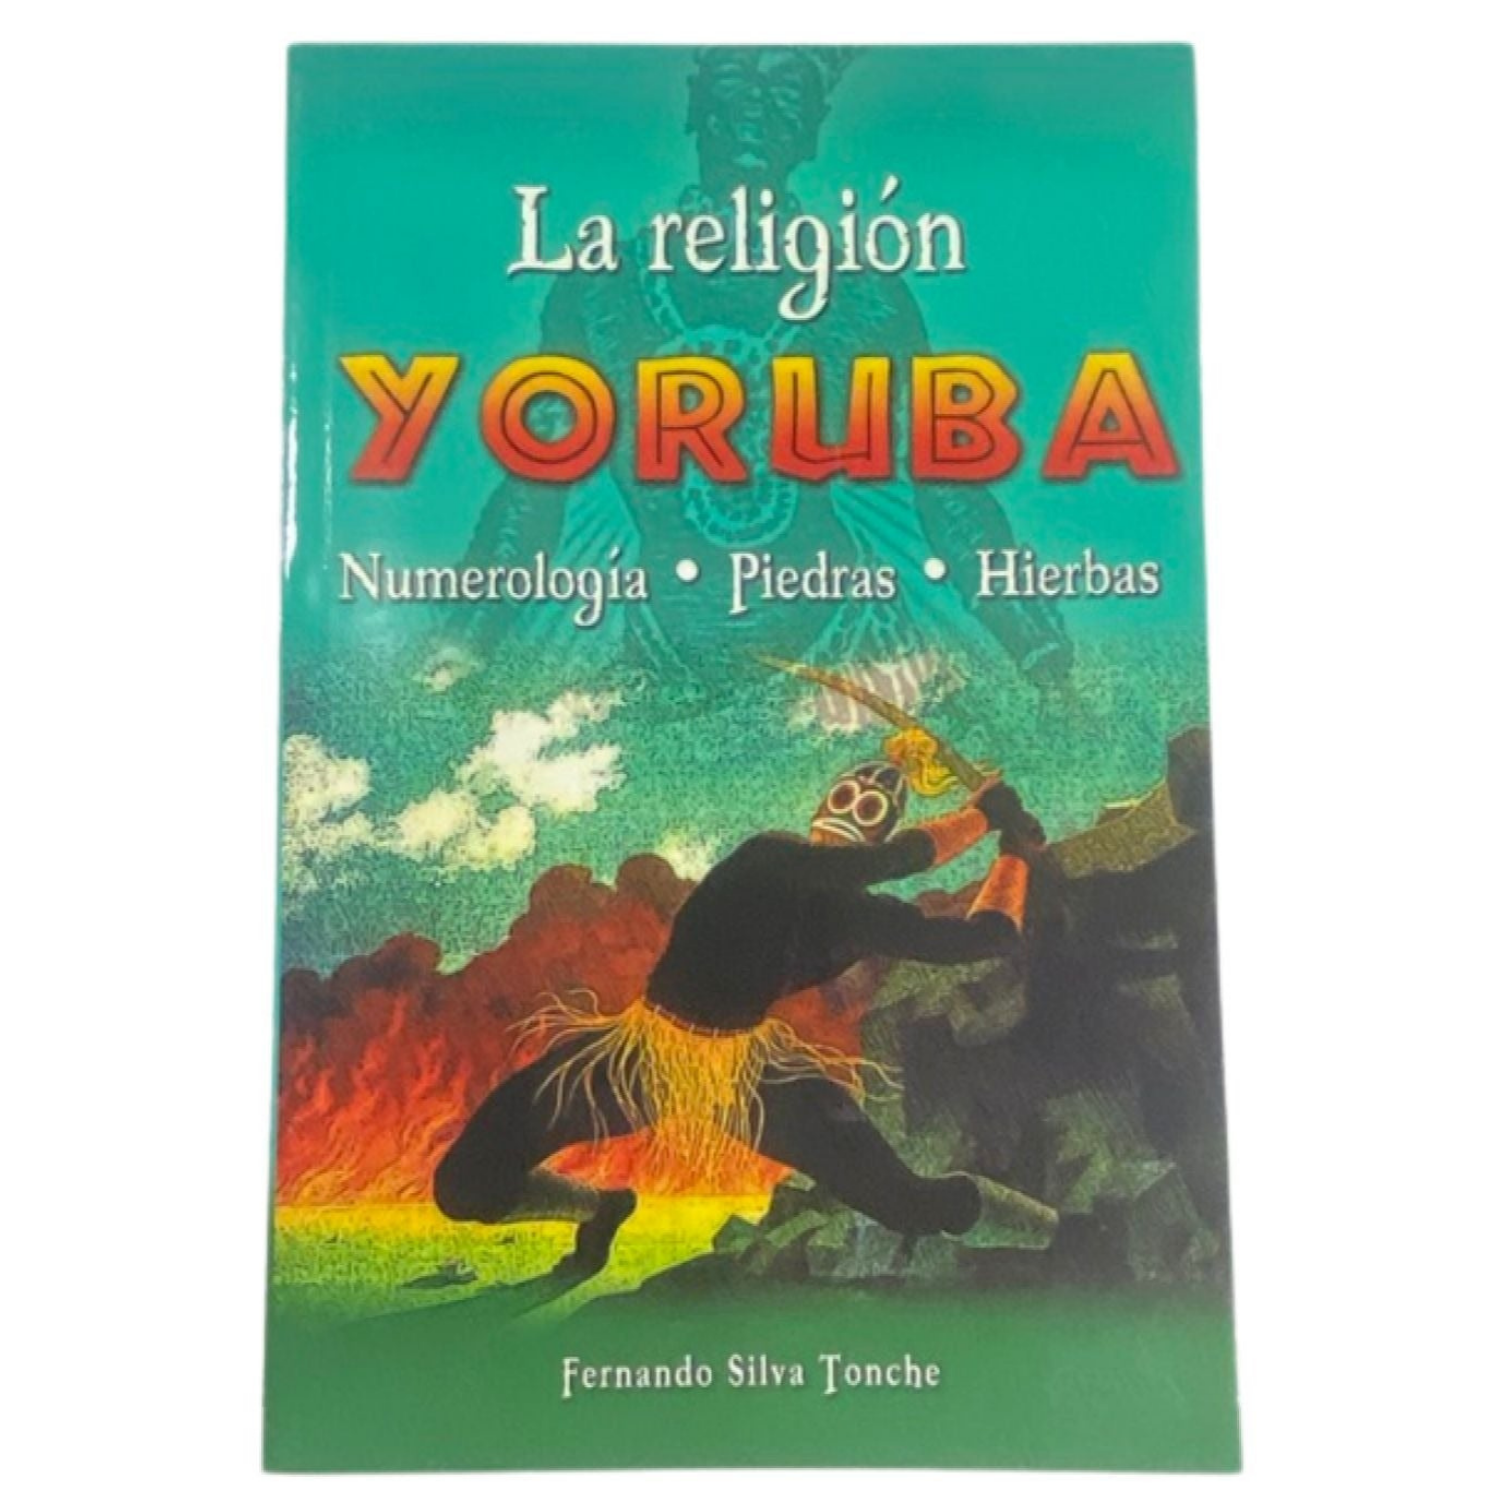 La Religion Yoruba